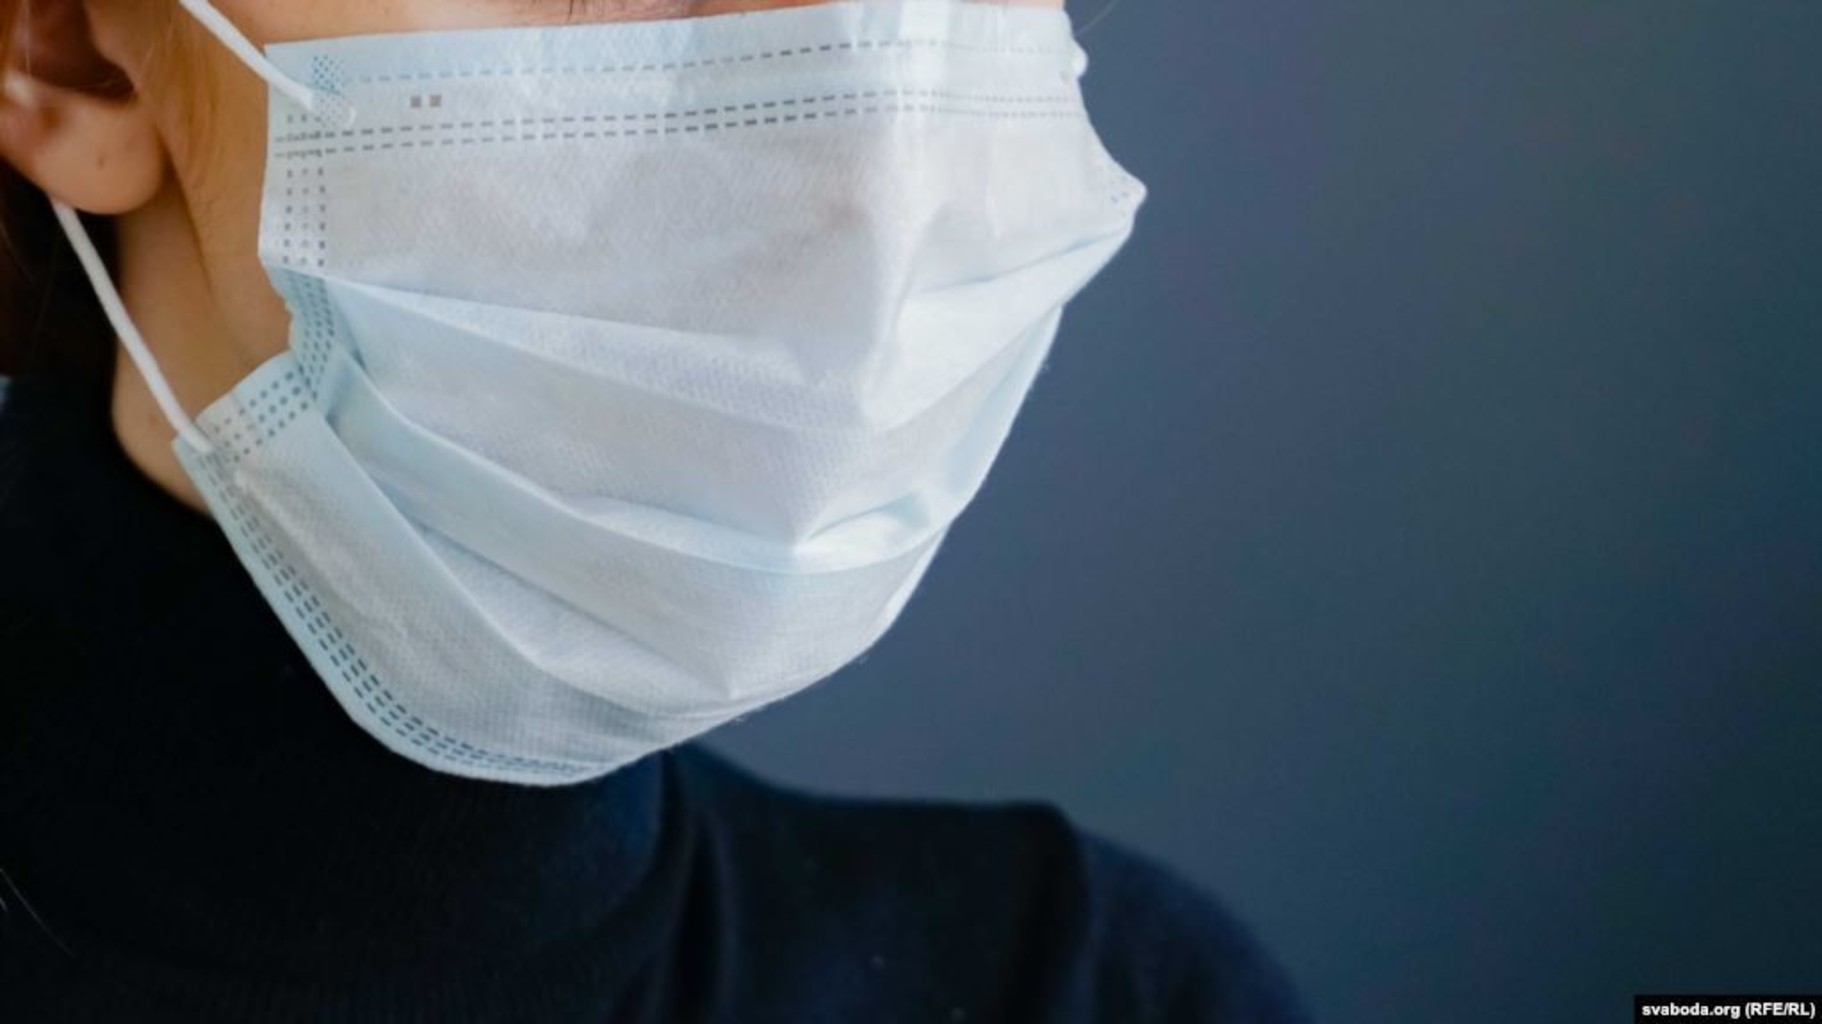 Есть медицинская маска. Маска медицинская. Медицинская маска в руке. Маска защитная медицинская. Медицинские маски от коронавируса.